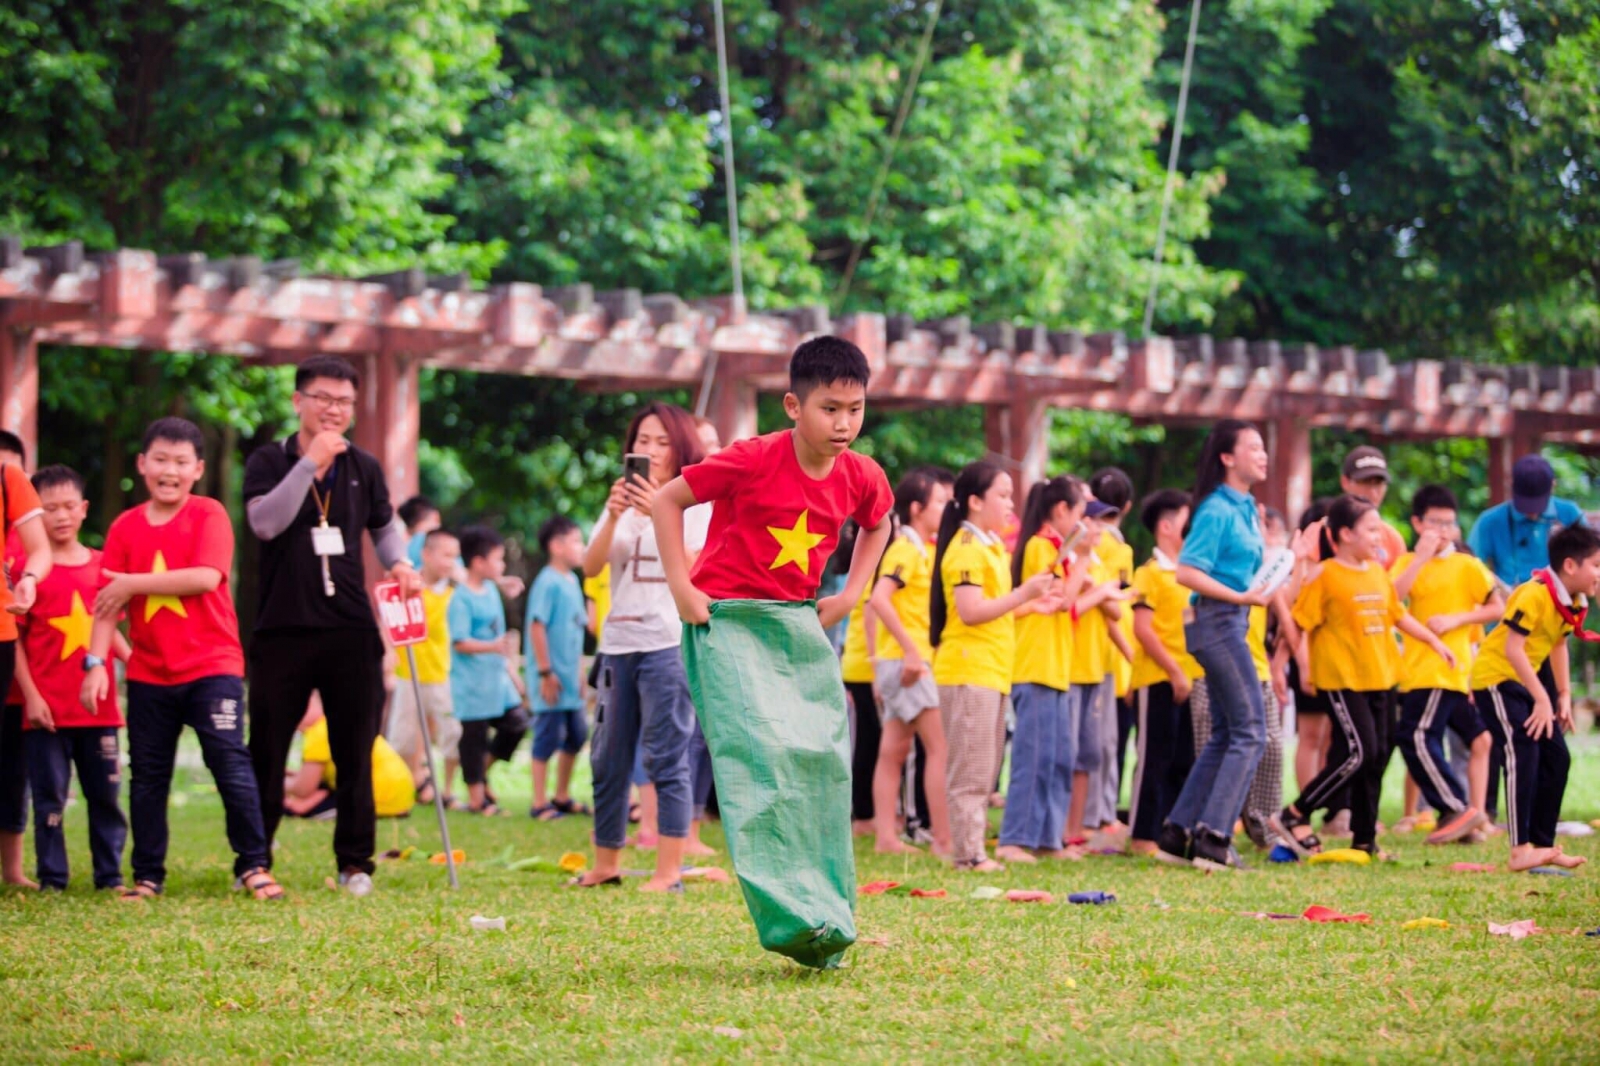 Hoạt động tiếp theo Superkids tổ chức tại Làng văn hóa 54 dân tộc là hoạt động Team bulding sôi động và nhiều trò chơi thú vị, lôi cuốn cả phụ huynh, giáo viên và các em học sinh cùng tham gia.